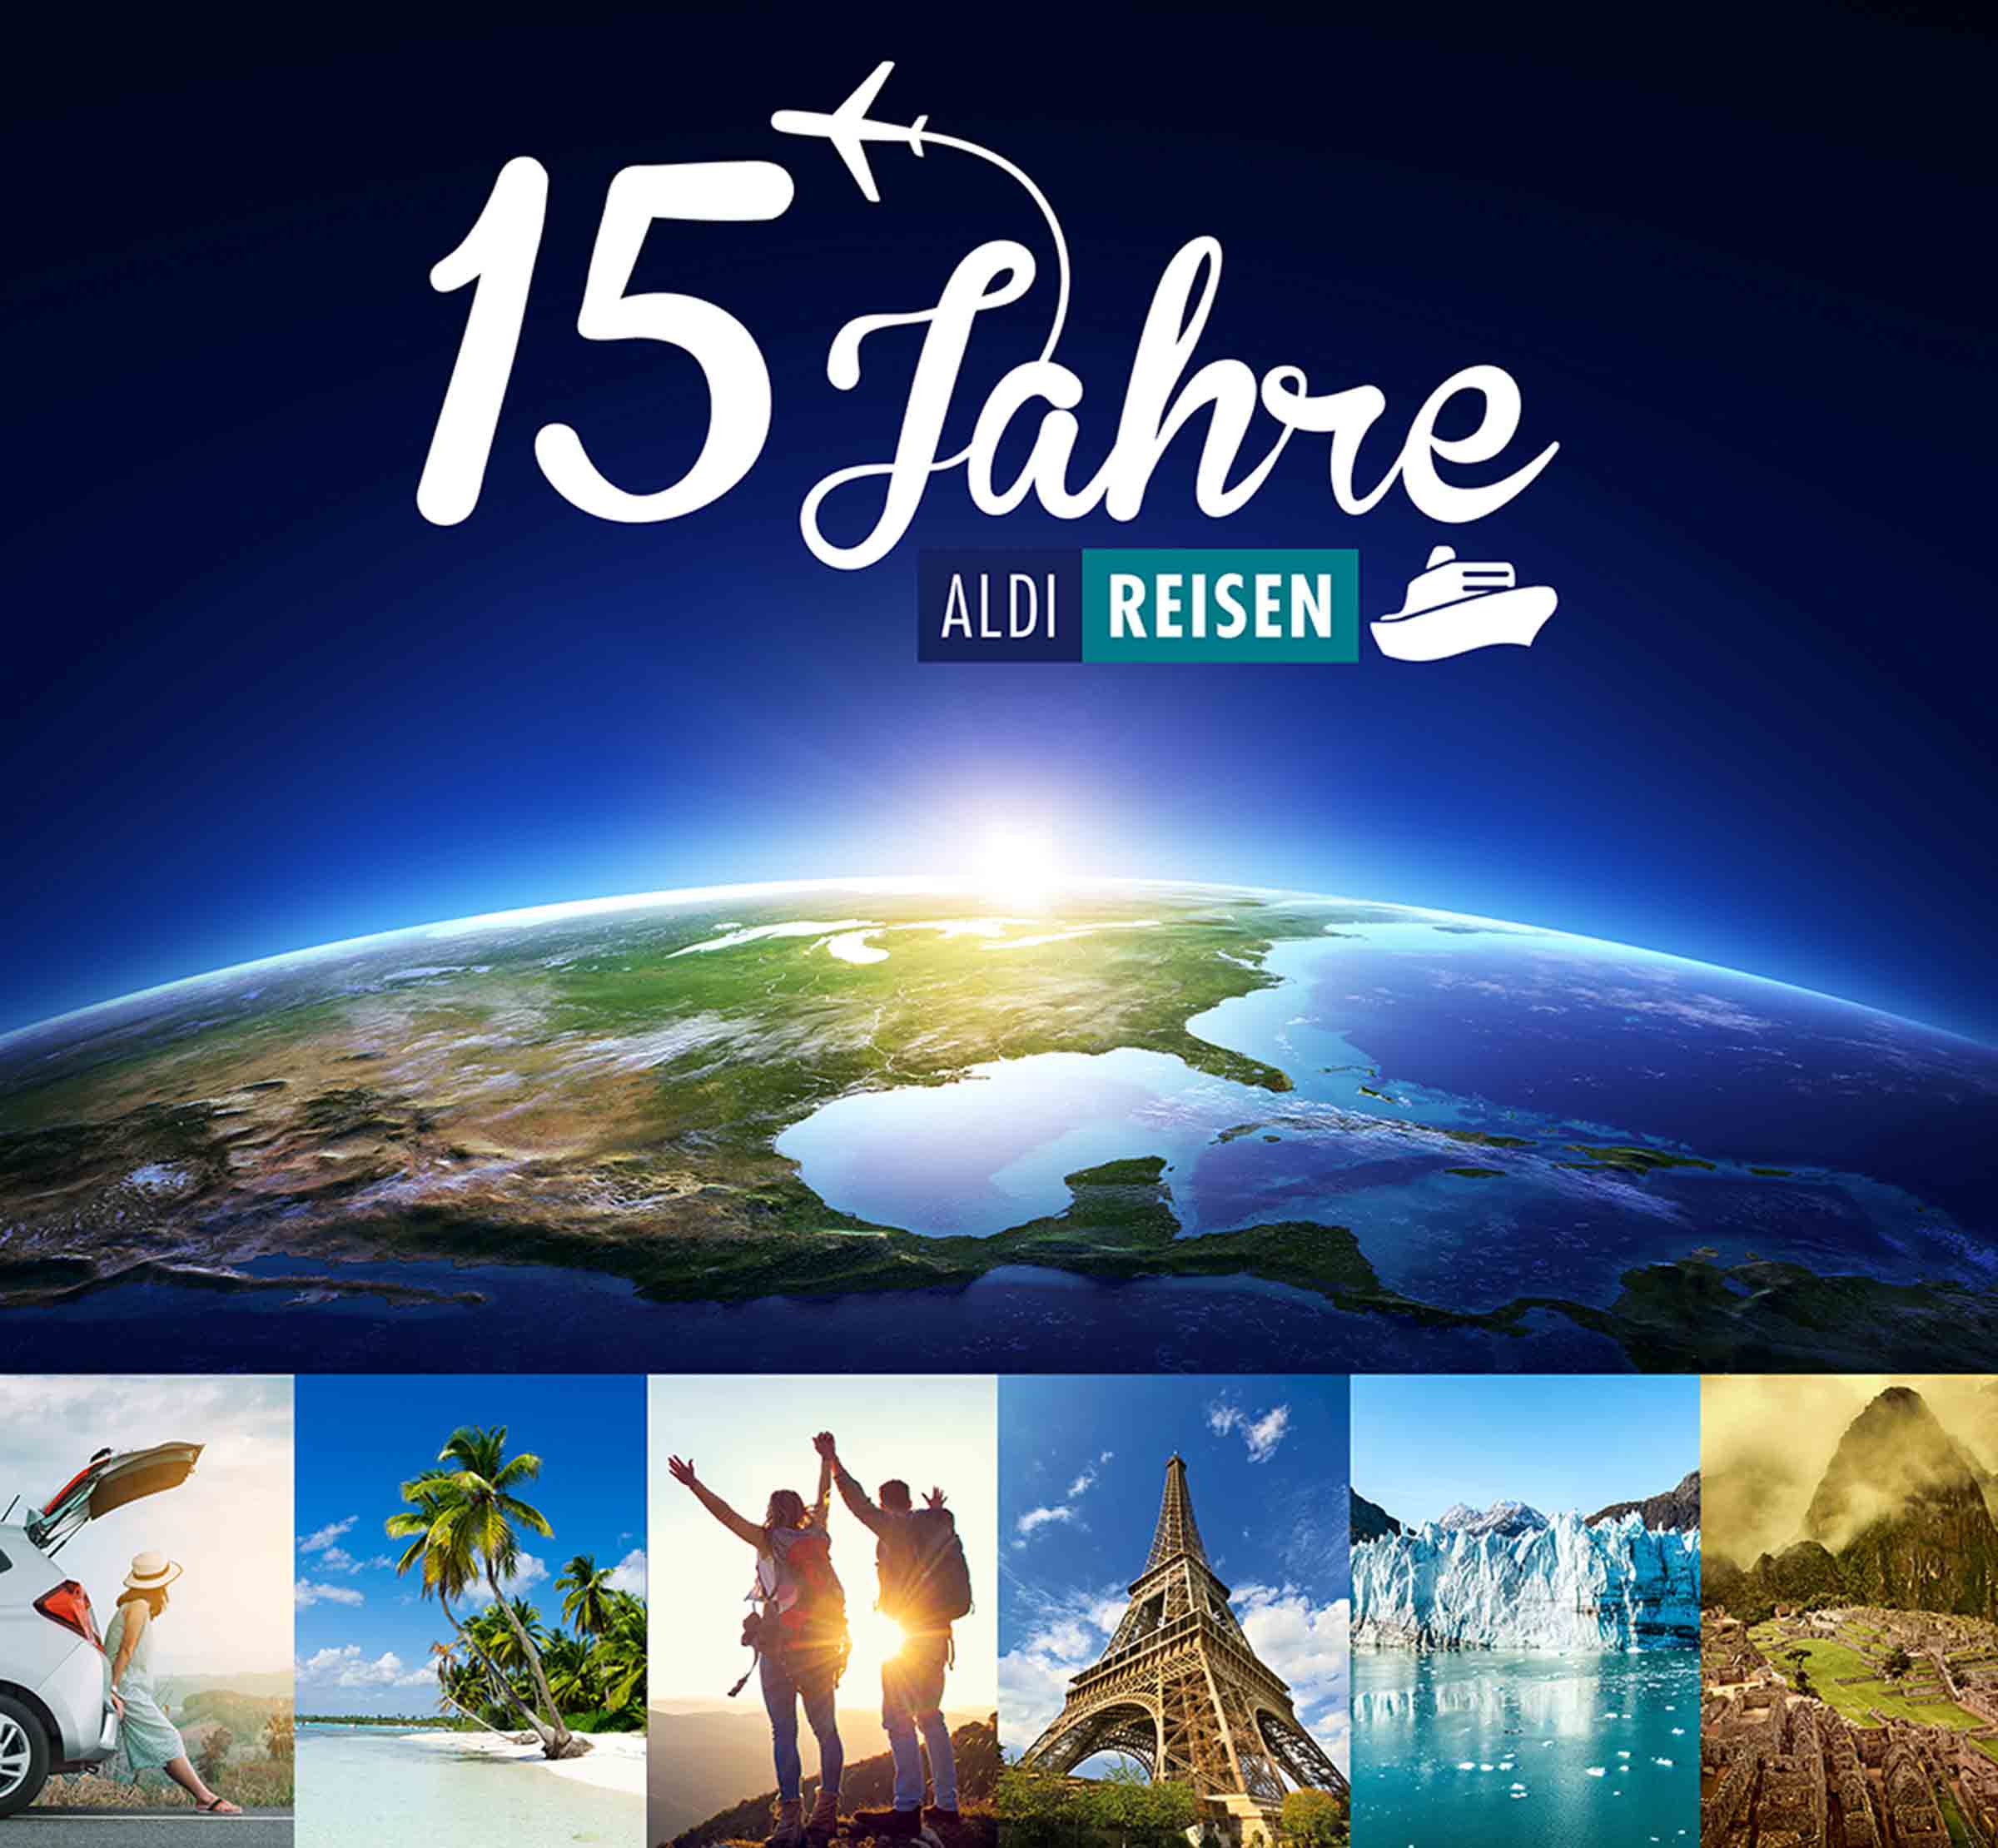 Einmal rund um den Globus: ALDI Reisen wird 15 Jahre alt